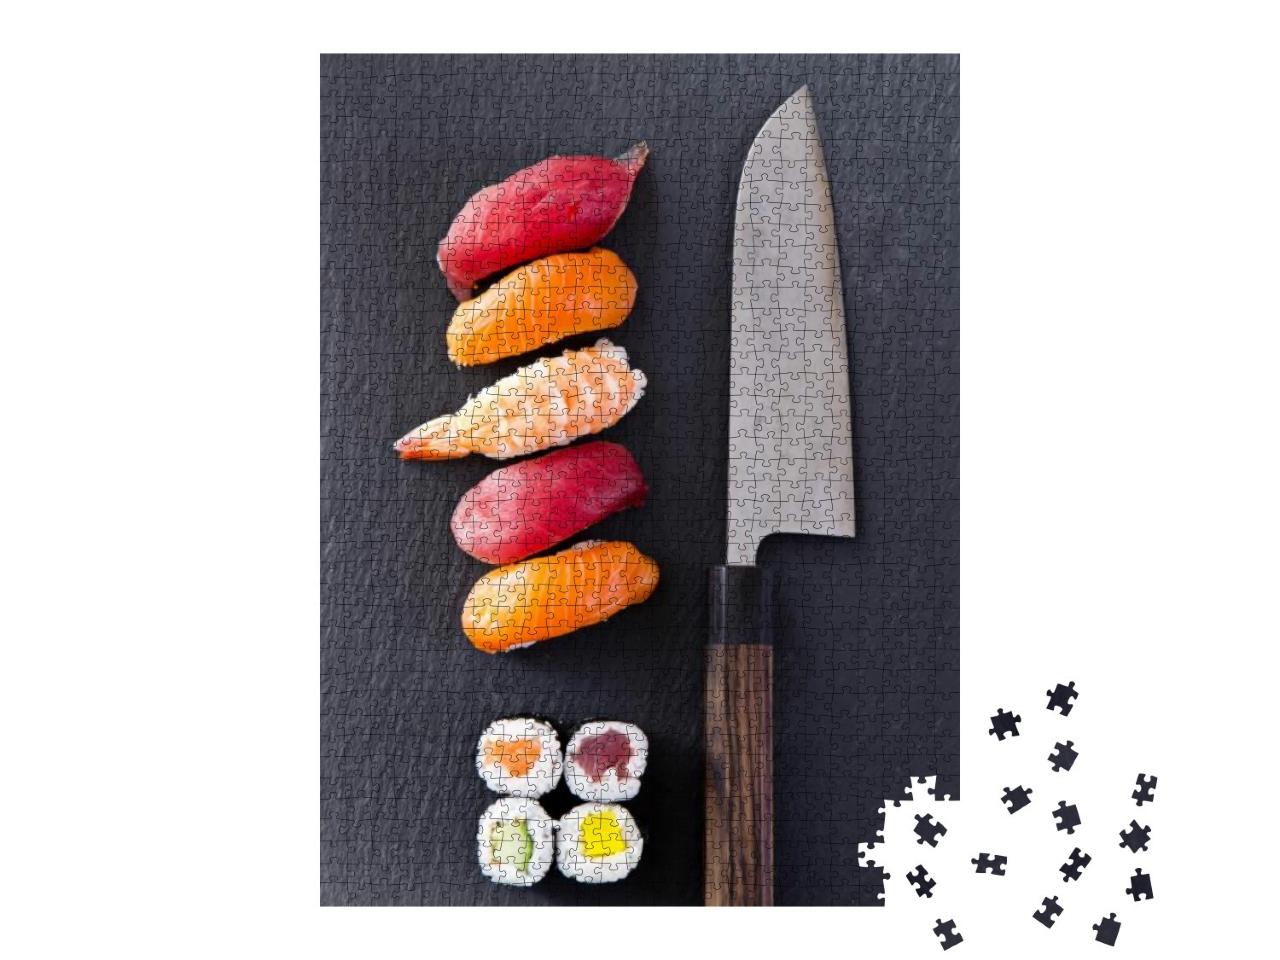 Puzzle 1000 Teile „Sushi mit Santokumesser“